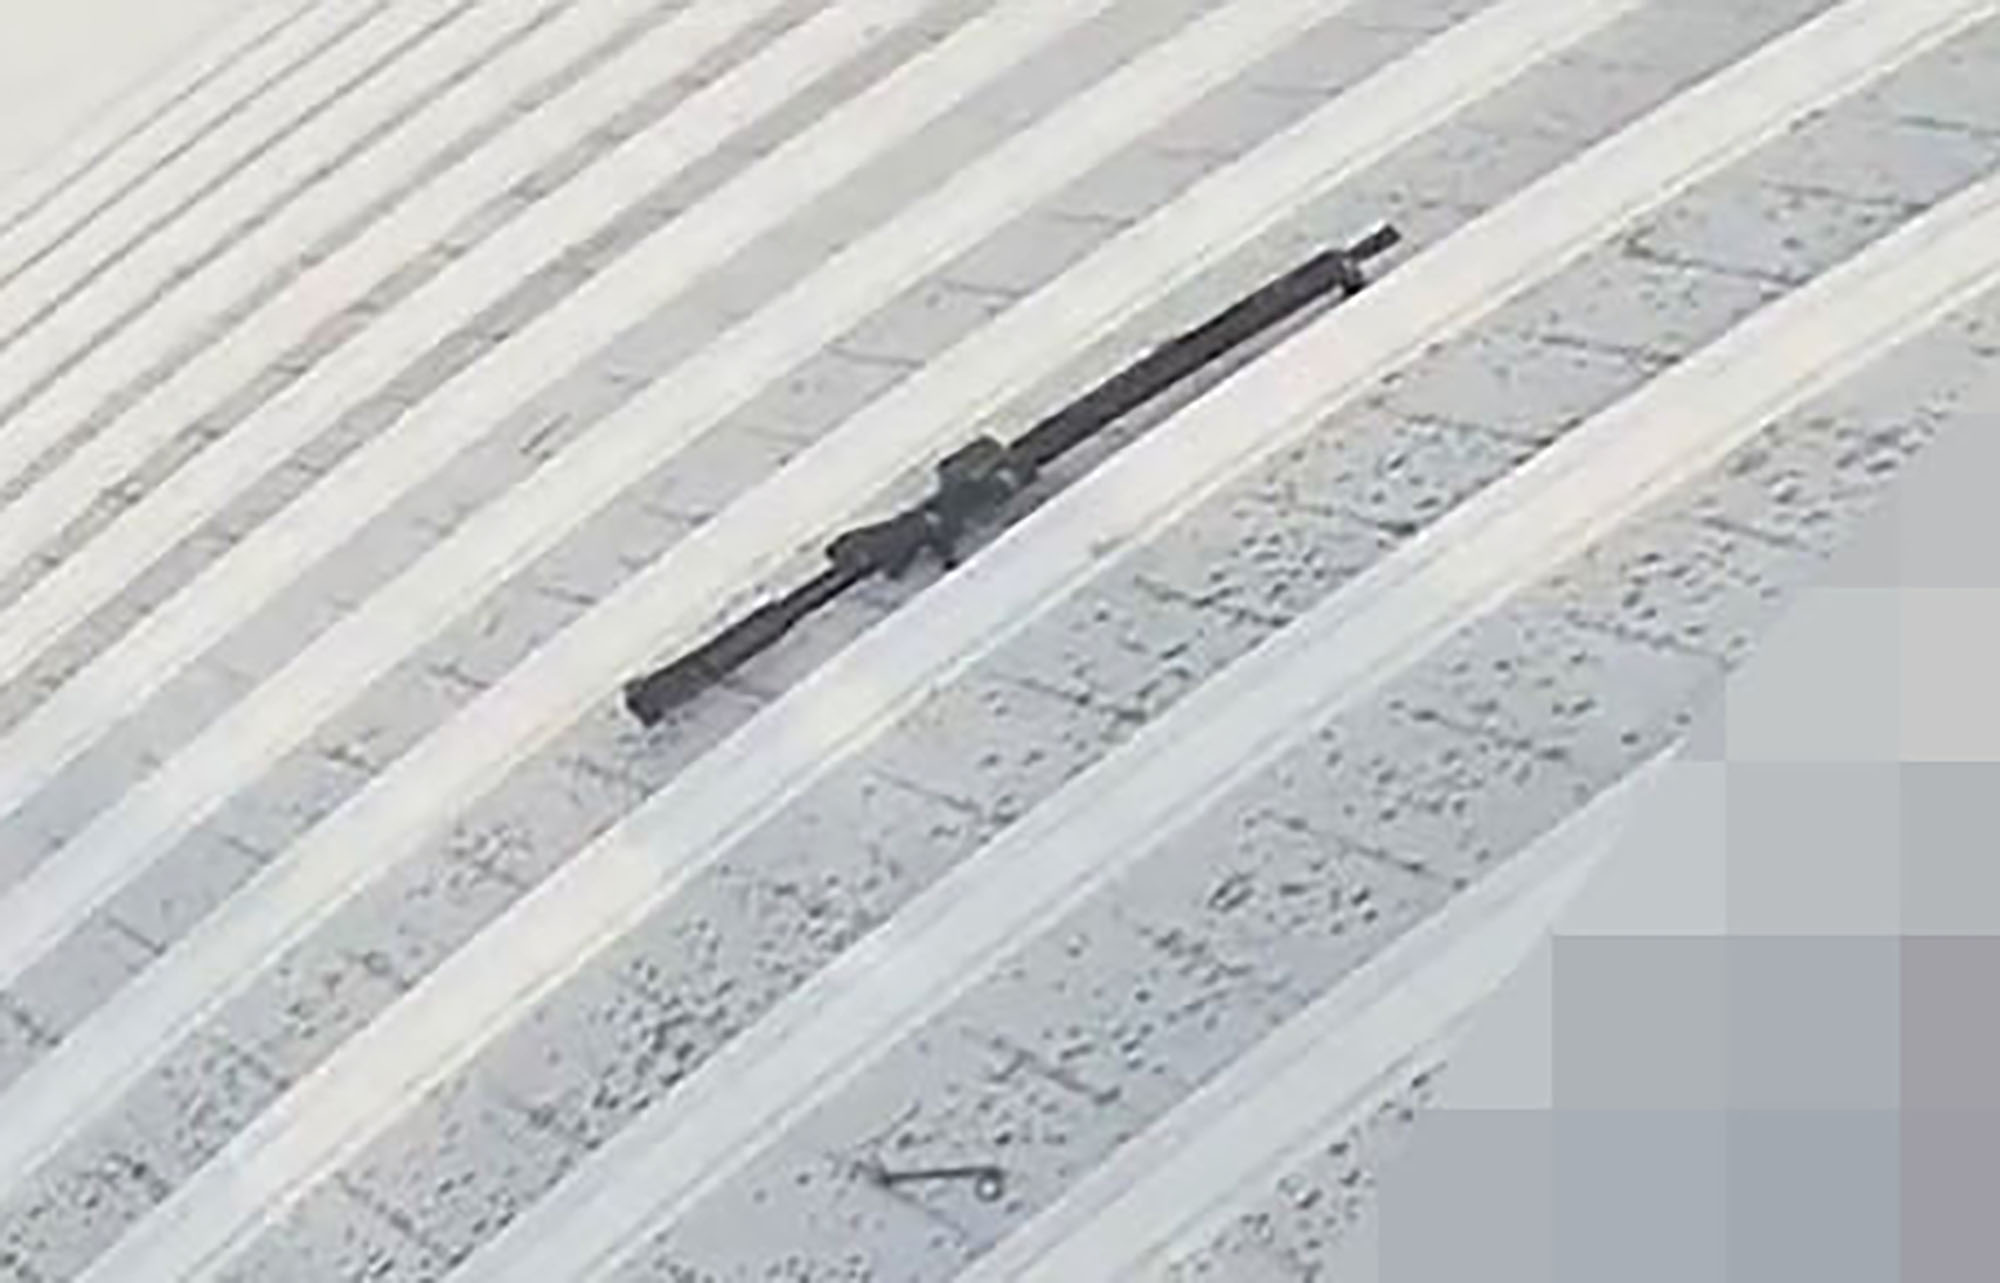 Le fusil utilisé lors de la fusillade se trouvait à côté de son corps sur le toit